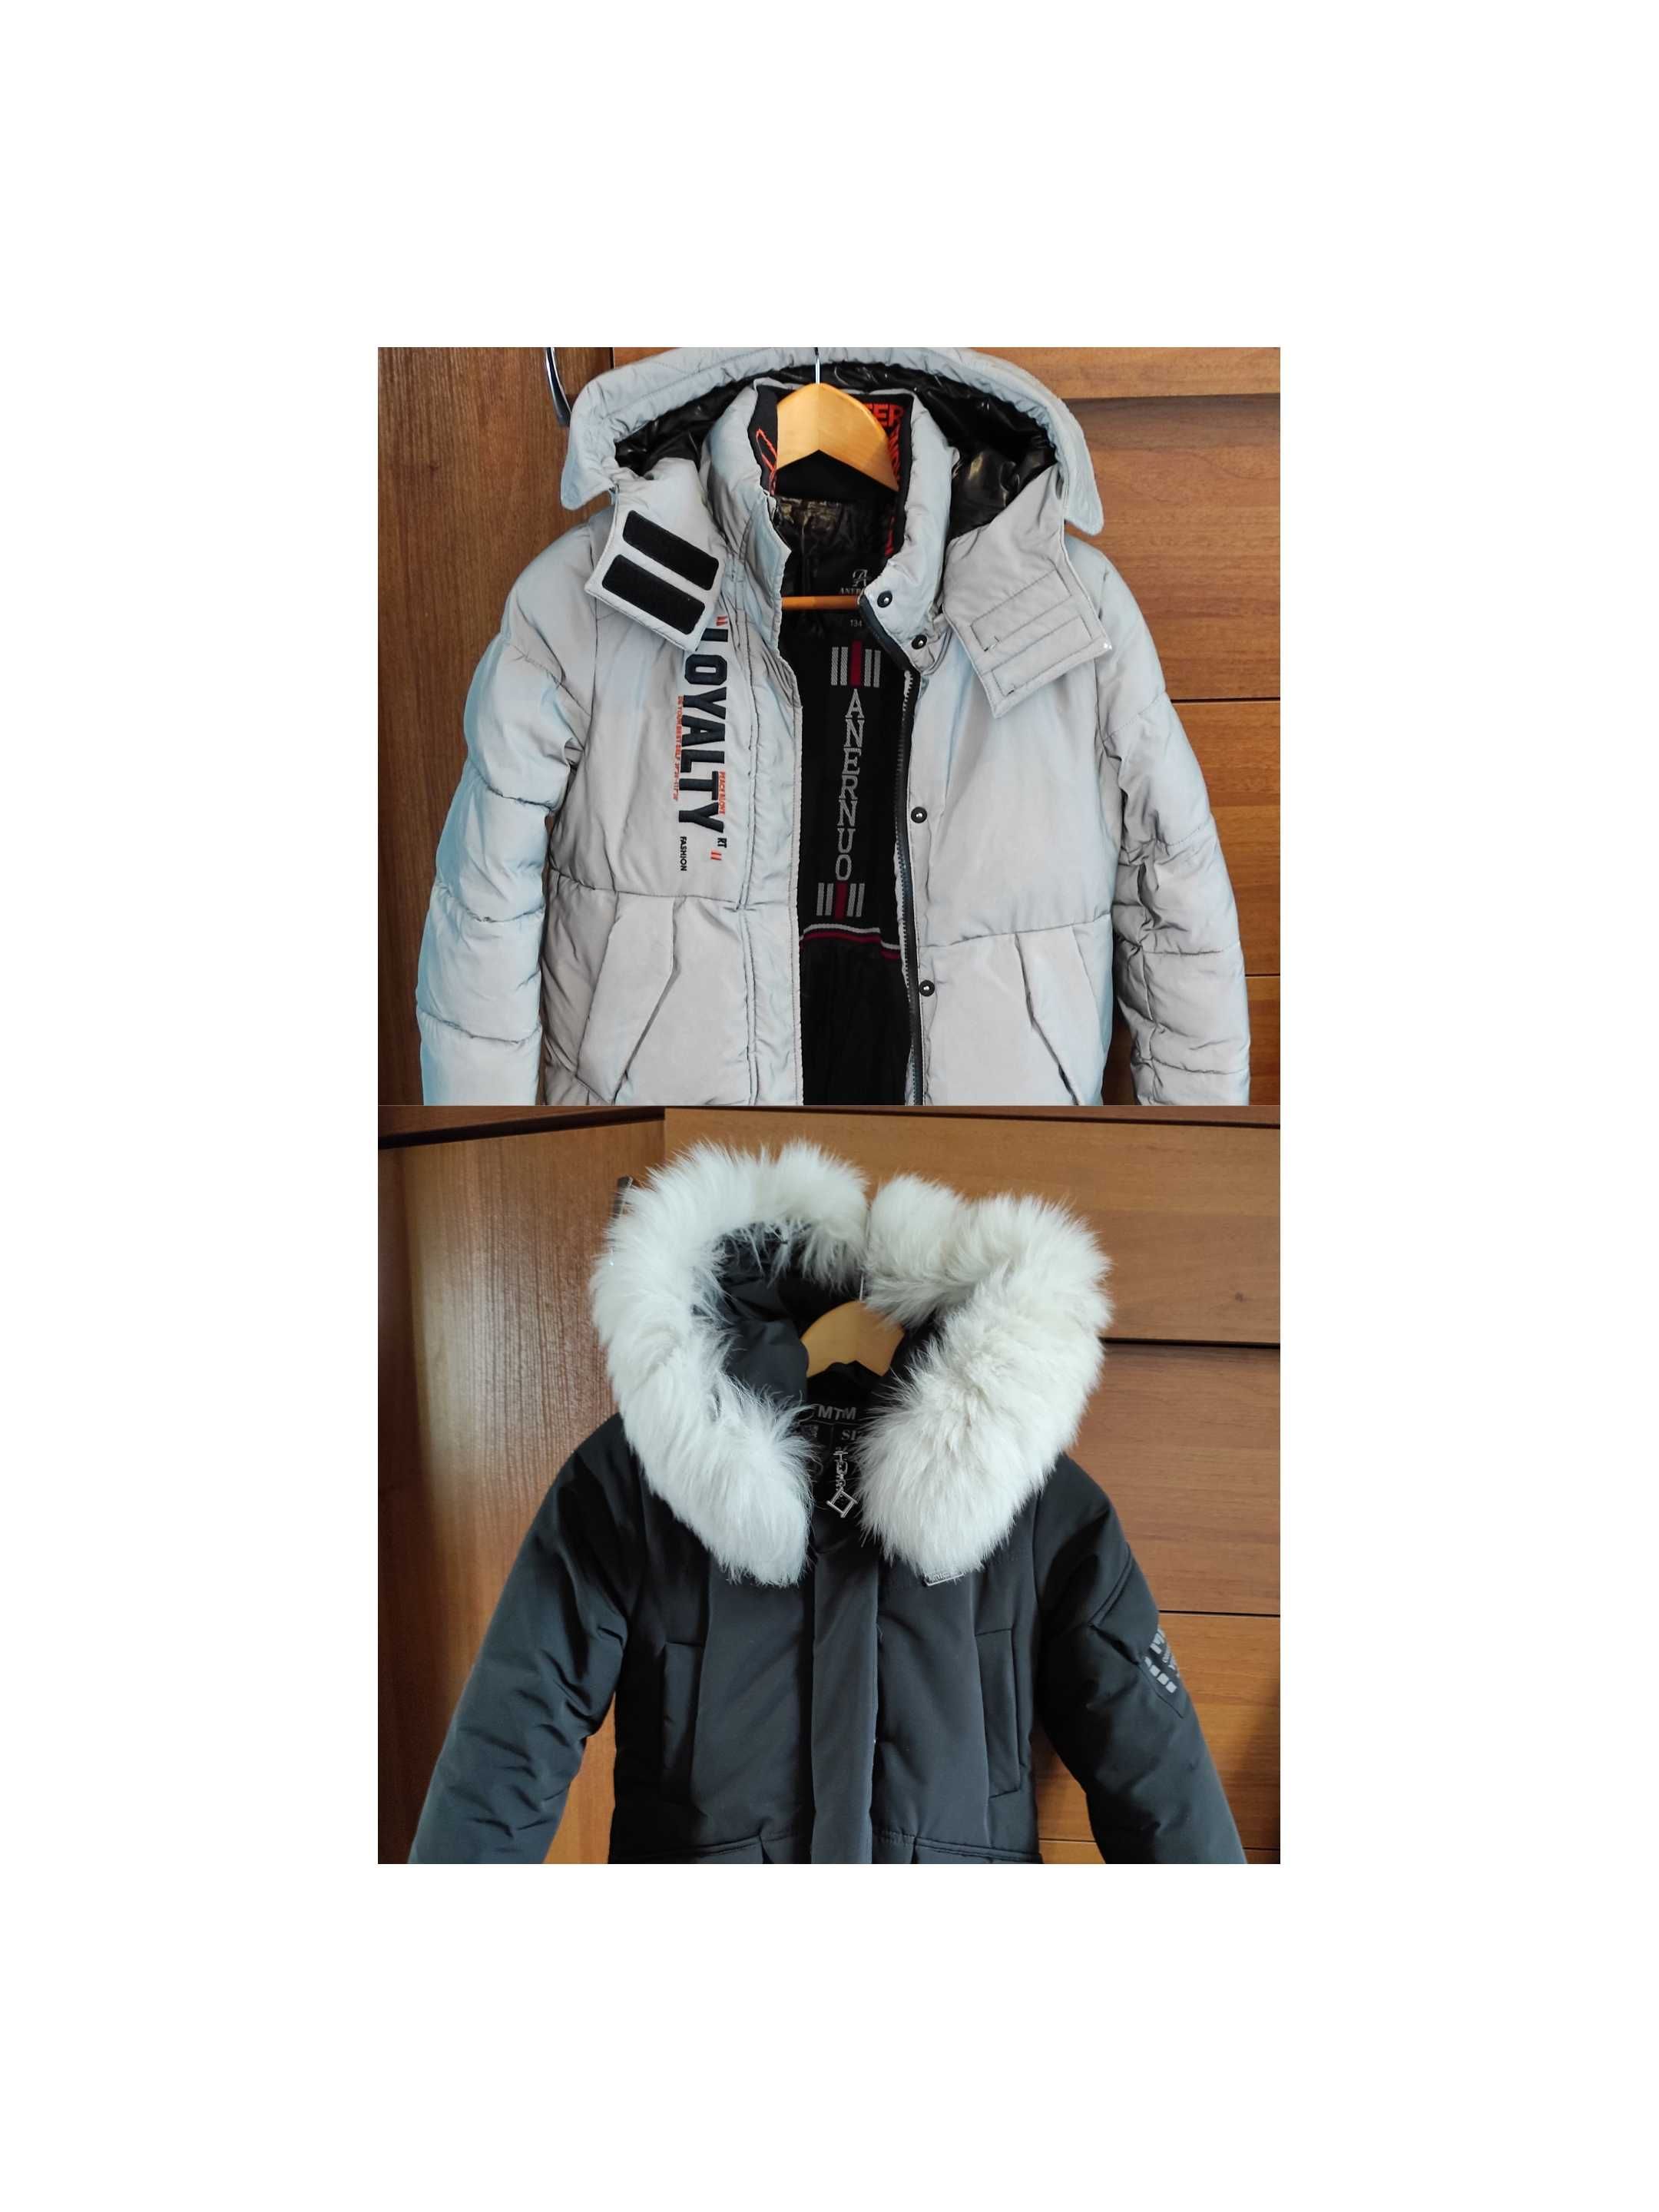 Куртка 128, куртка 134, куртка весна, куртка зима,осінь